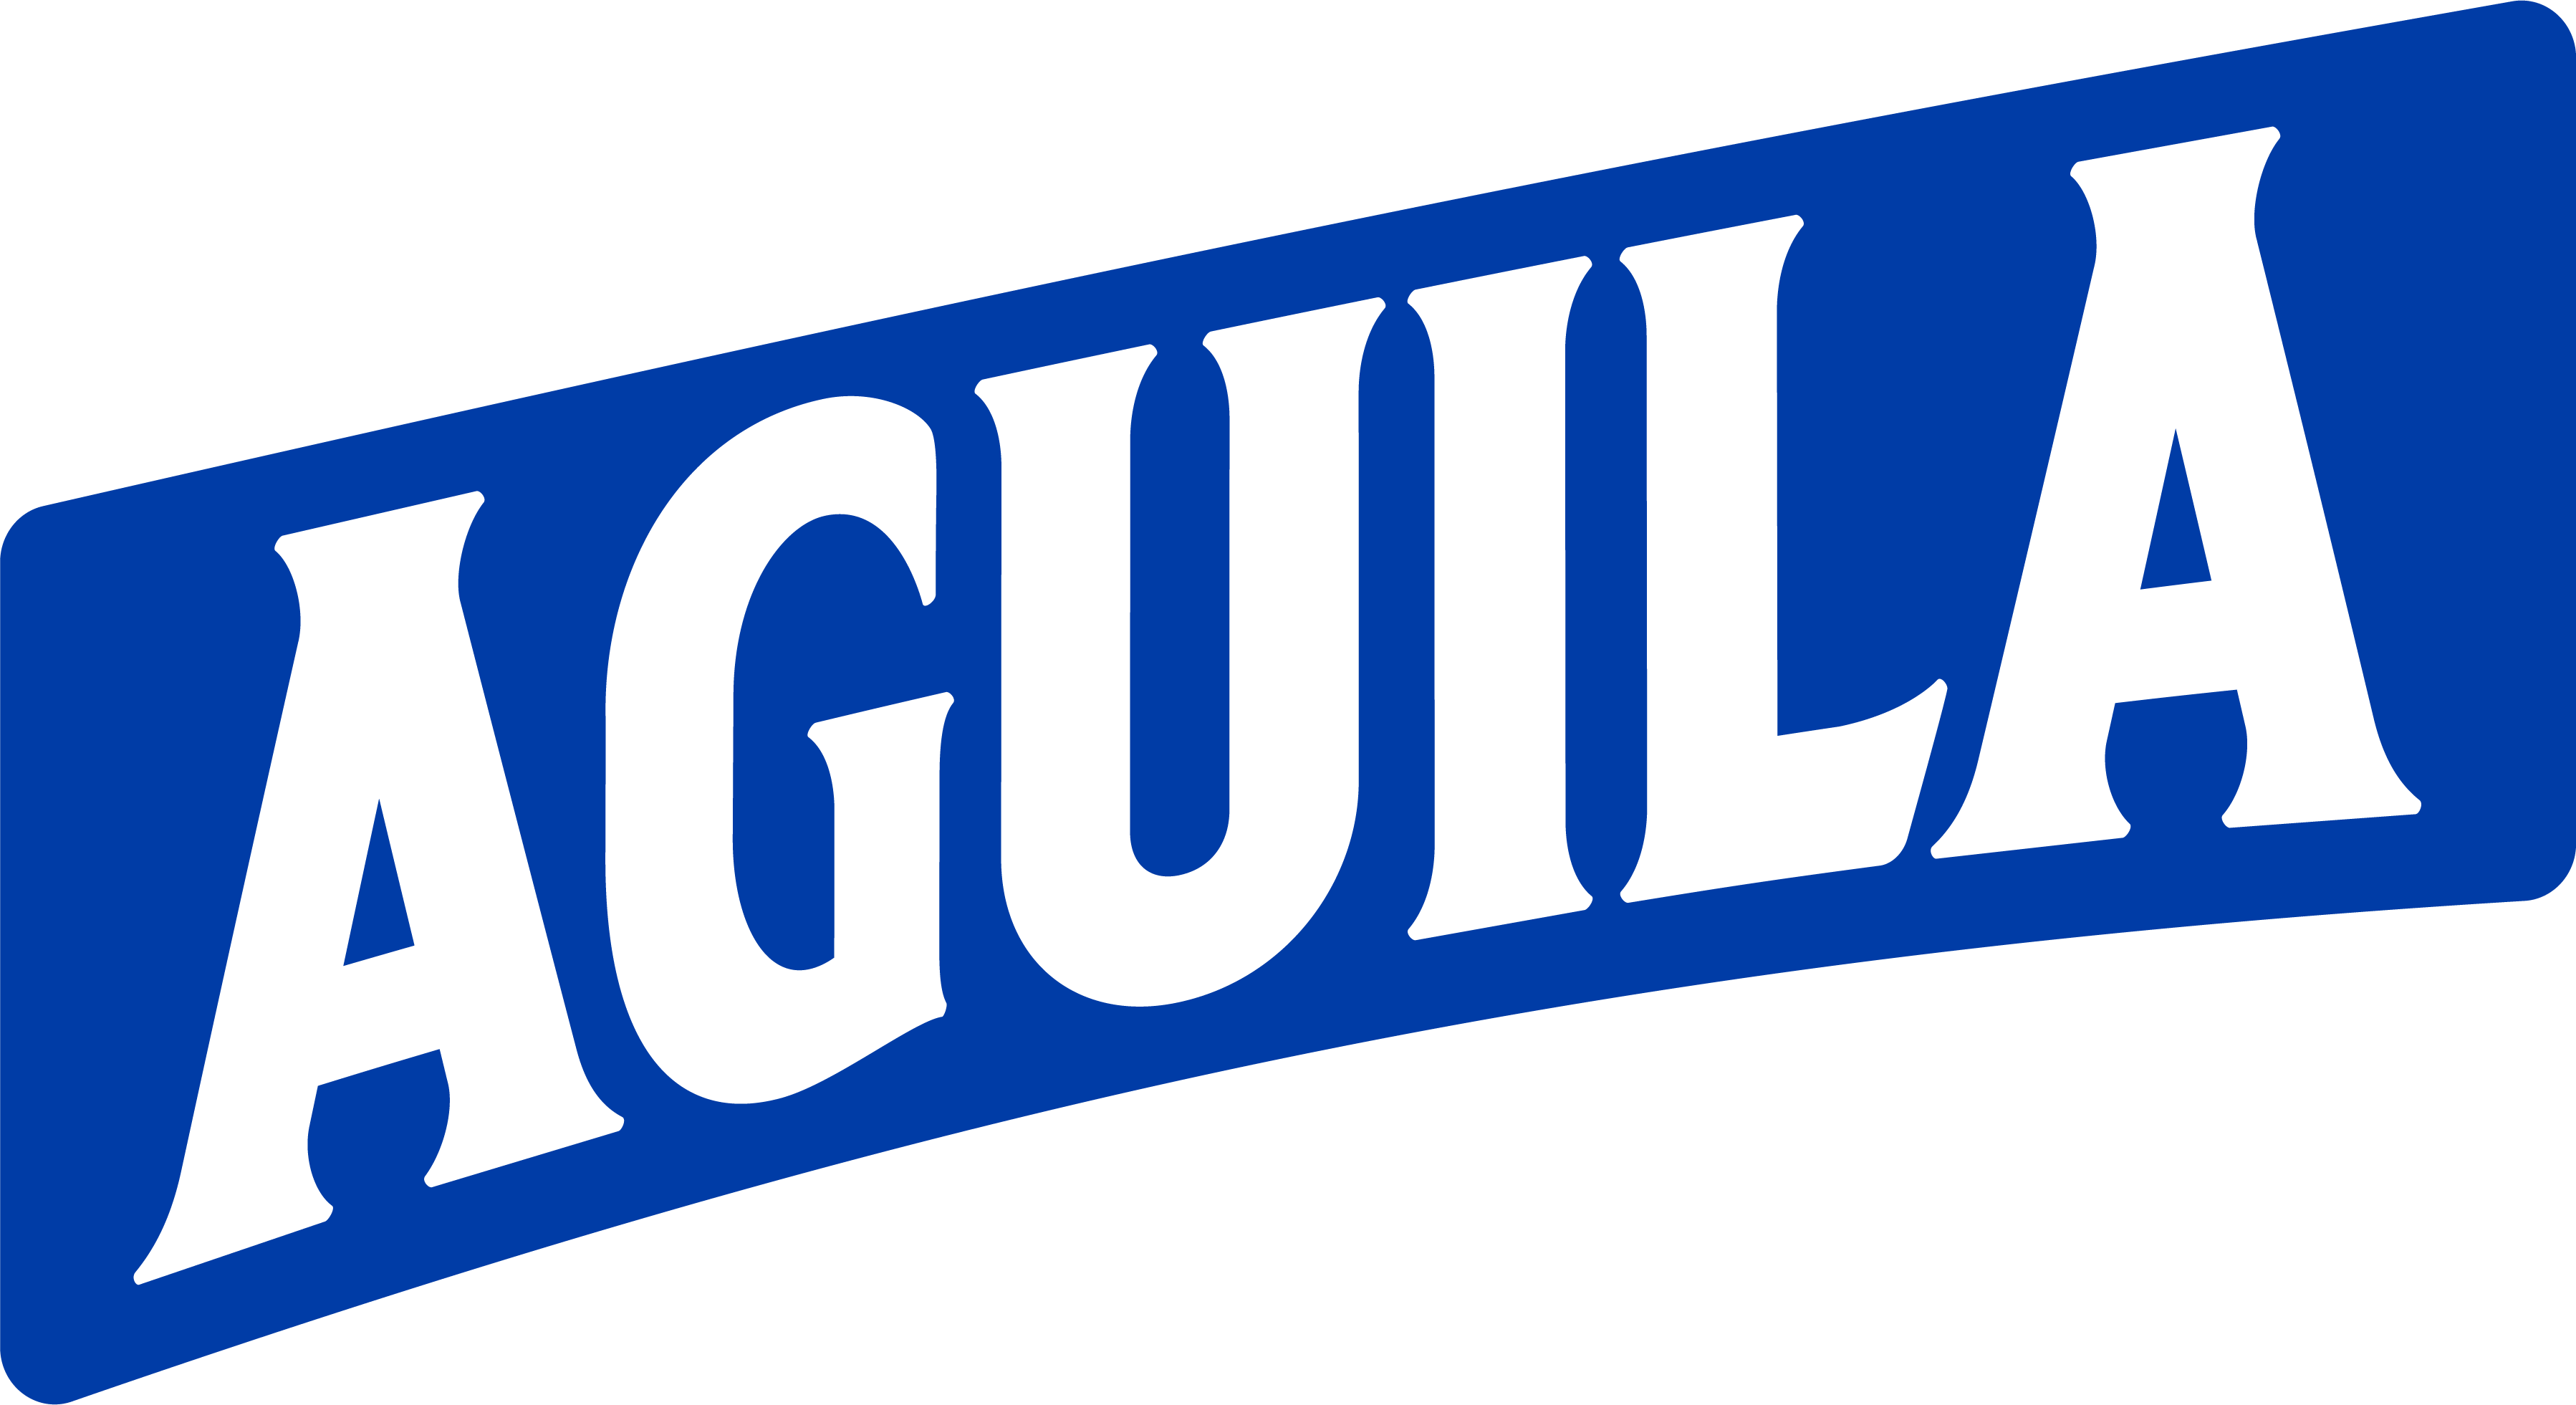 aguila